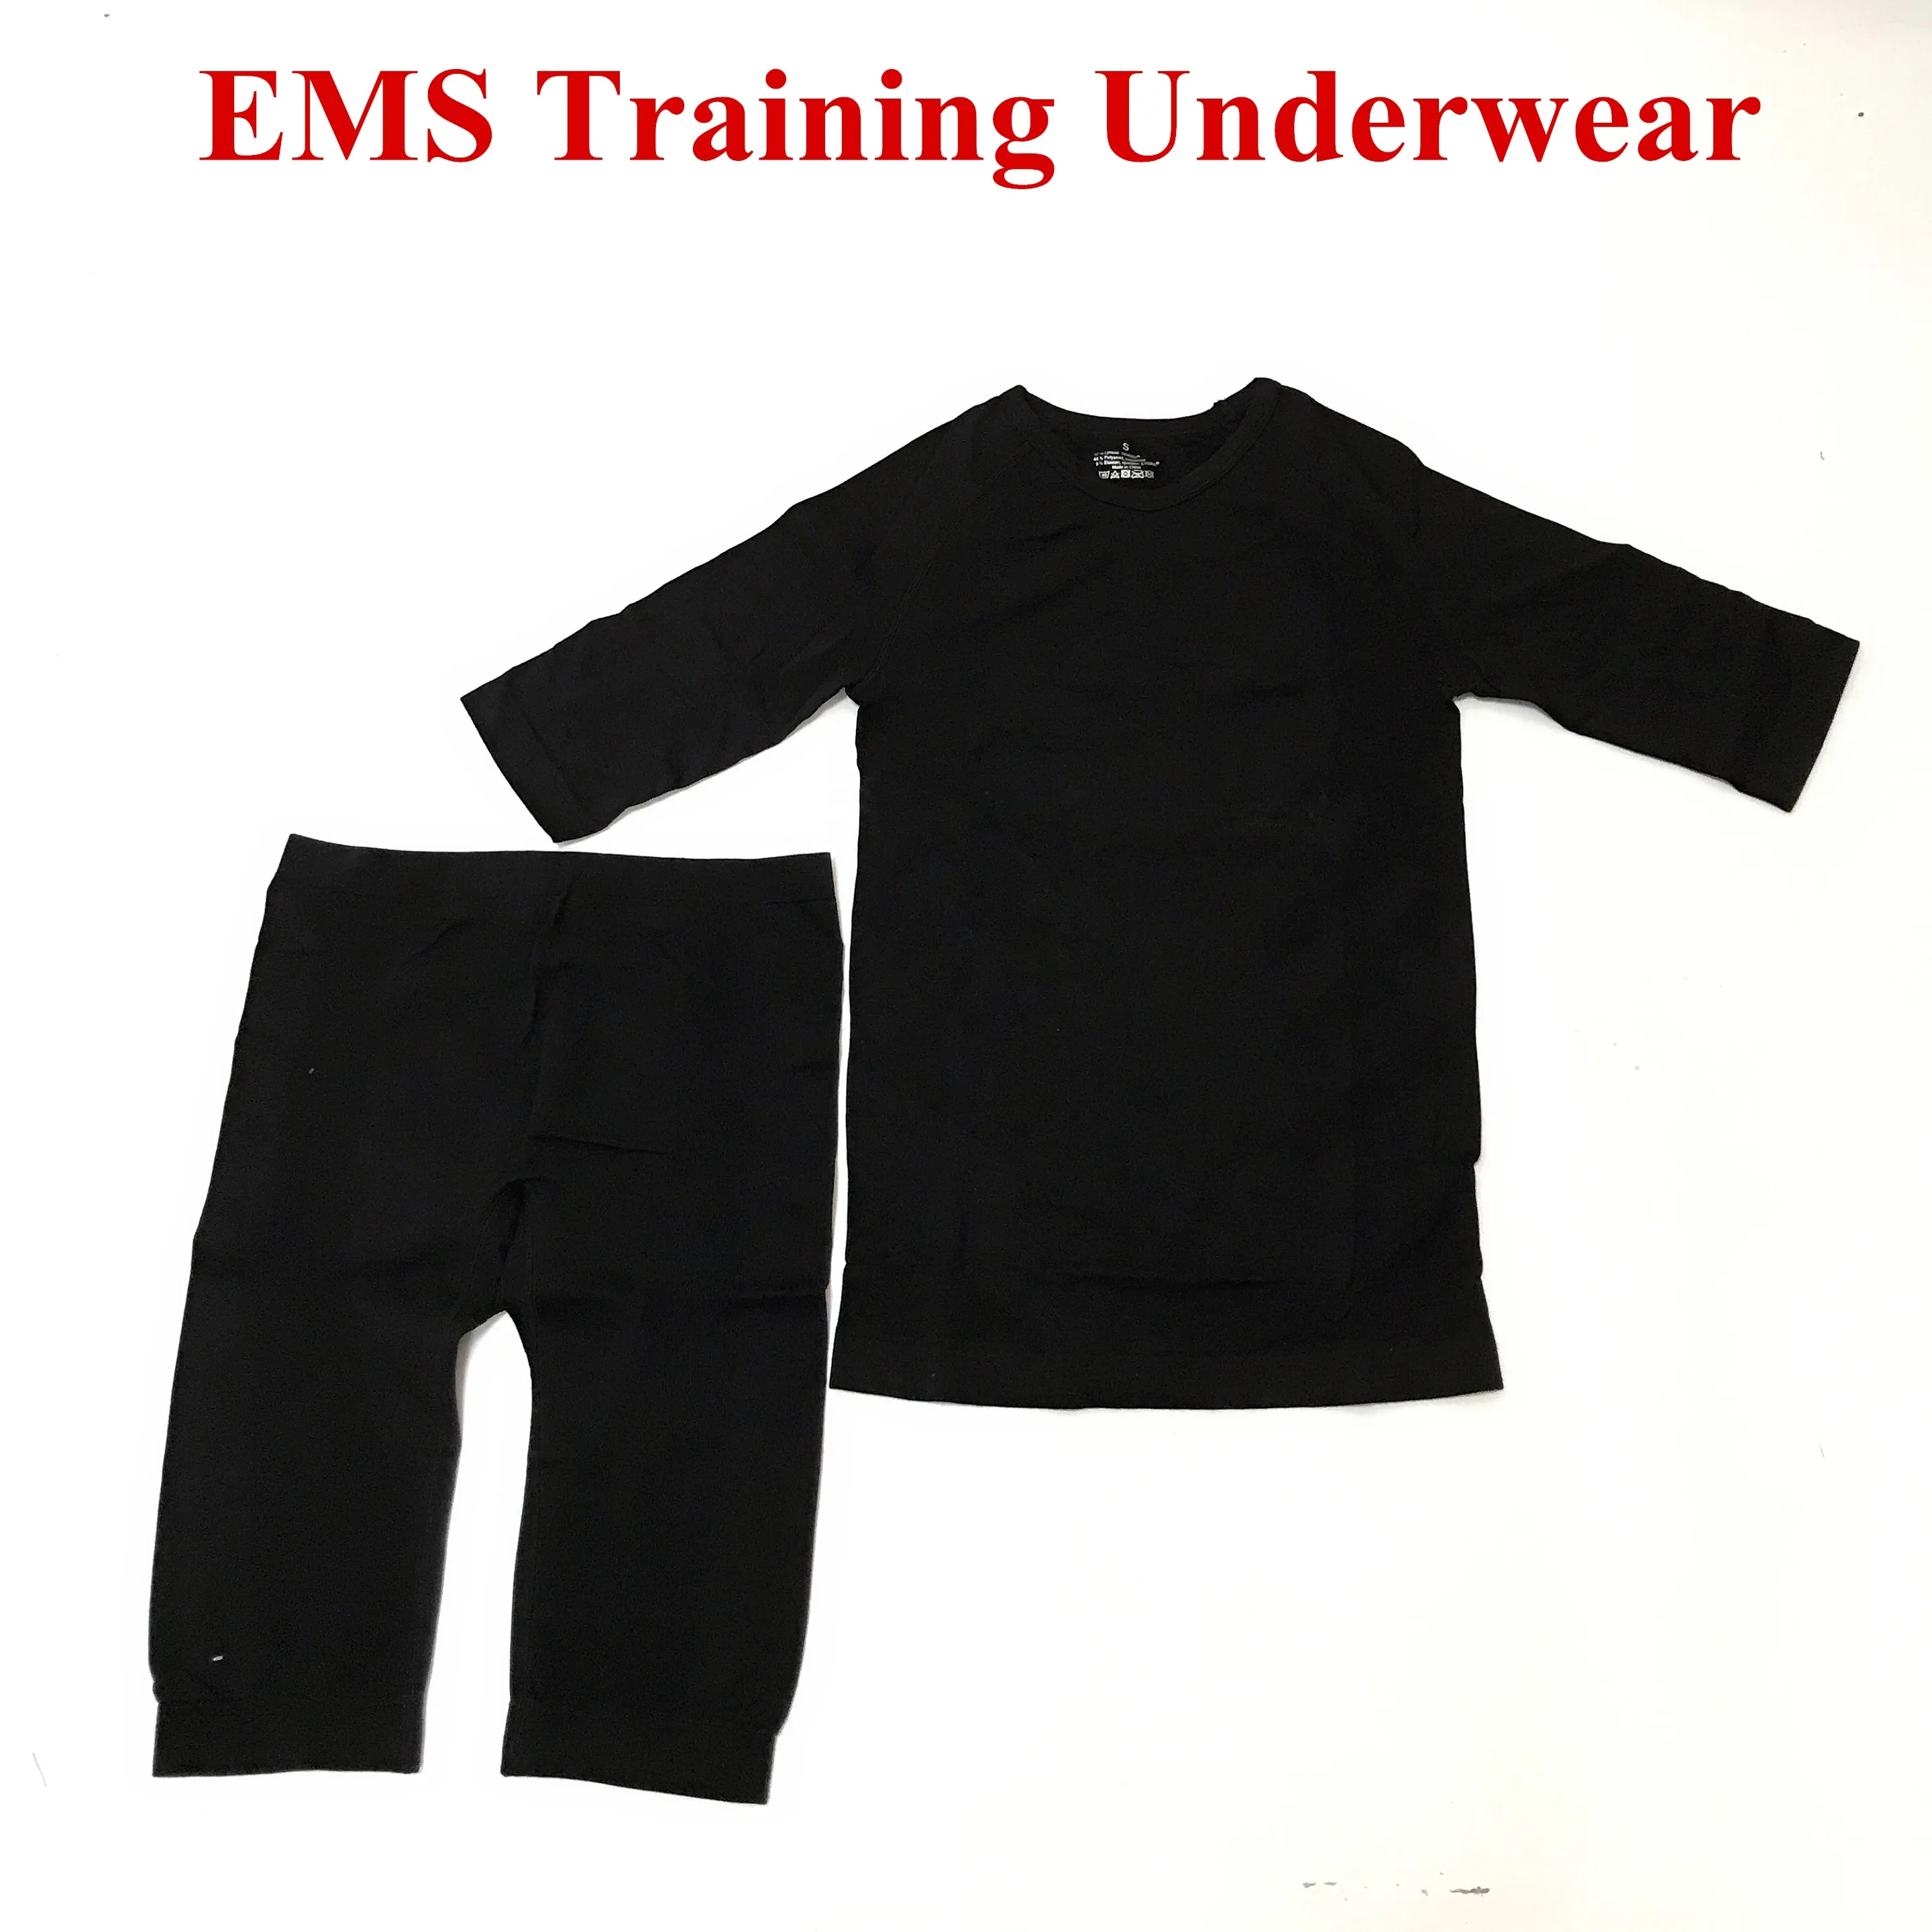 تدريب رخيص التدريب على الركض ارتداء ملابس داخلية سلسة ميها Bodytec EMS آلة التدريب الملابس الداخلية للياقة البدنية للجسم